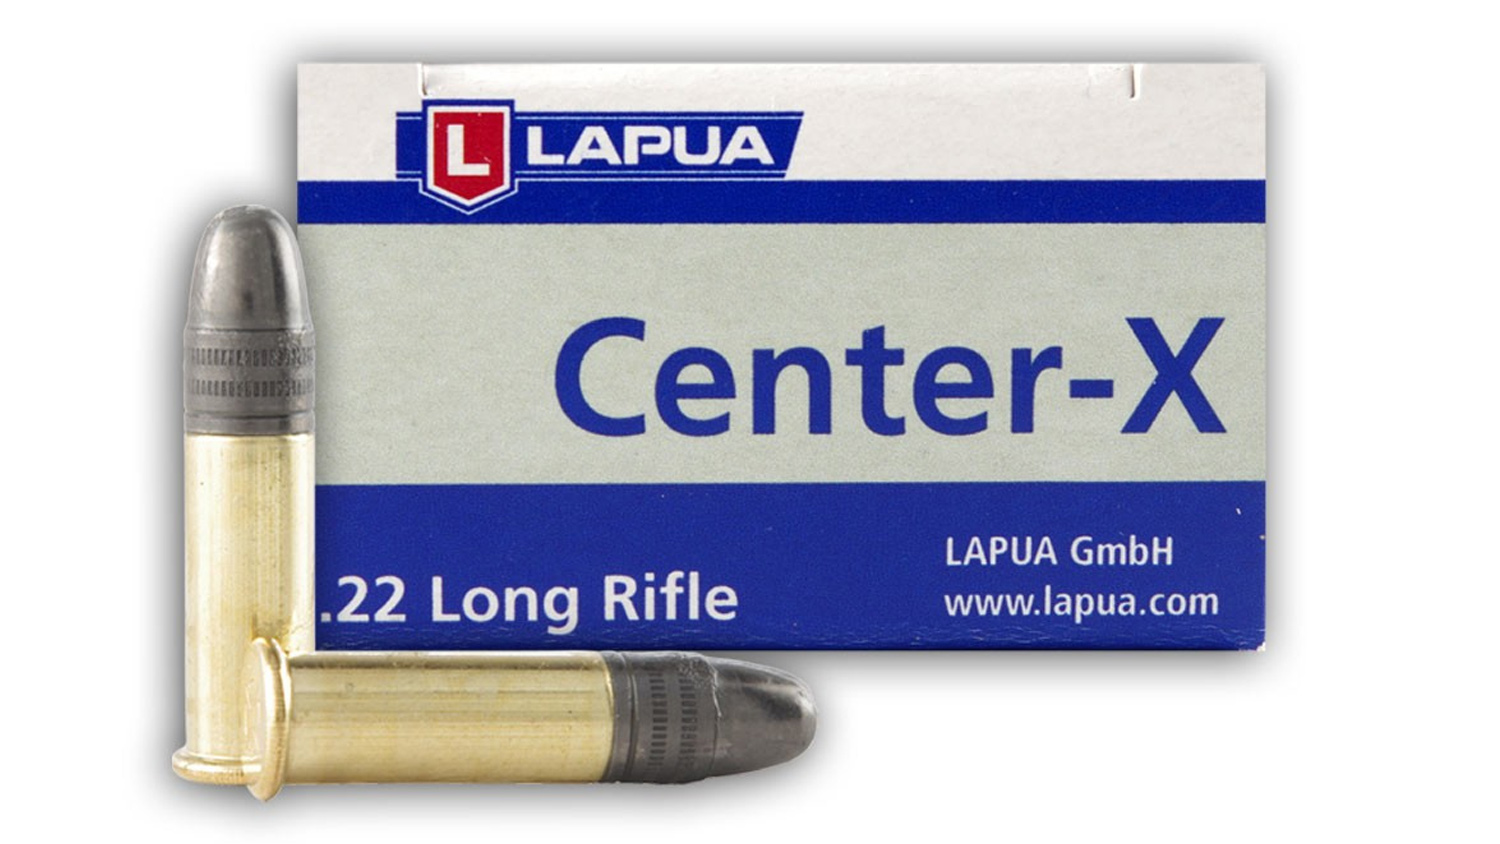 Lapua Center-X